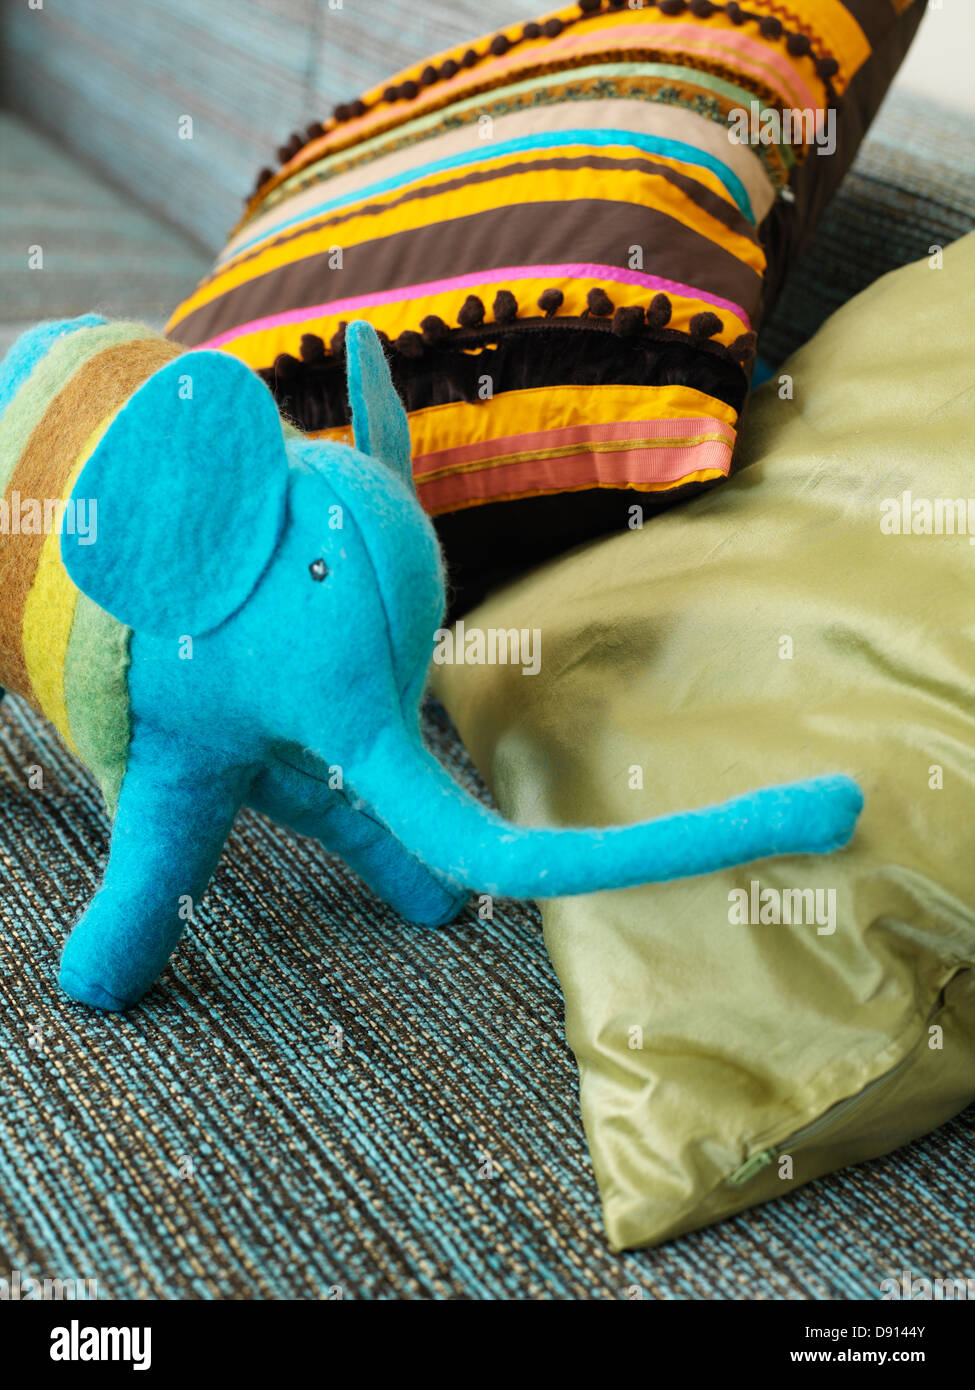 Detalle de la decoración de interiores con un elefante azul, Suecia. Foto de stock